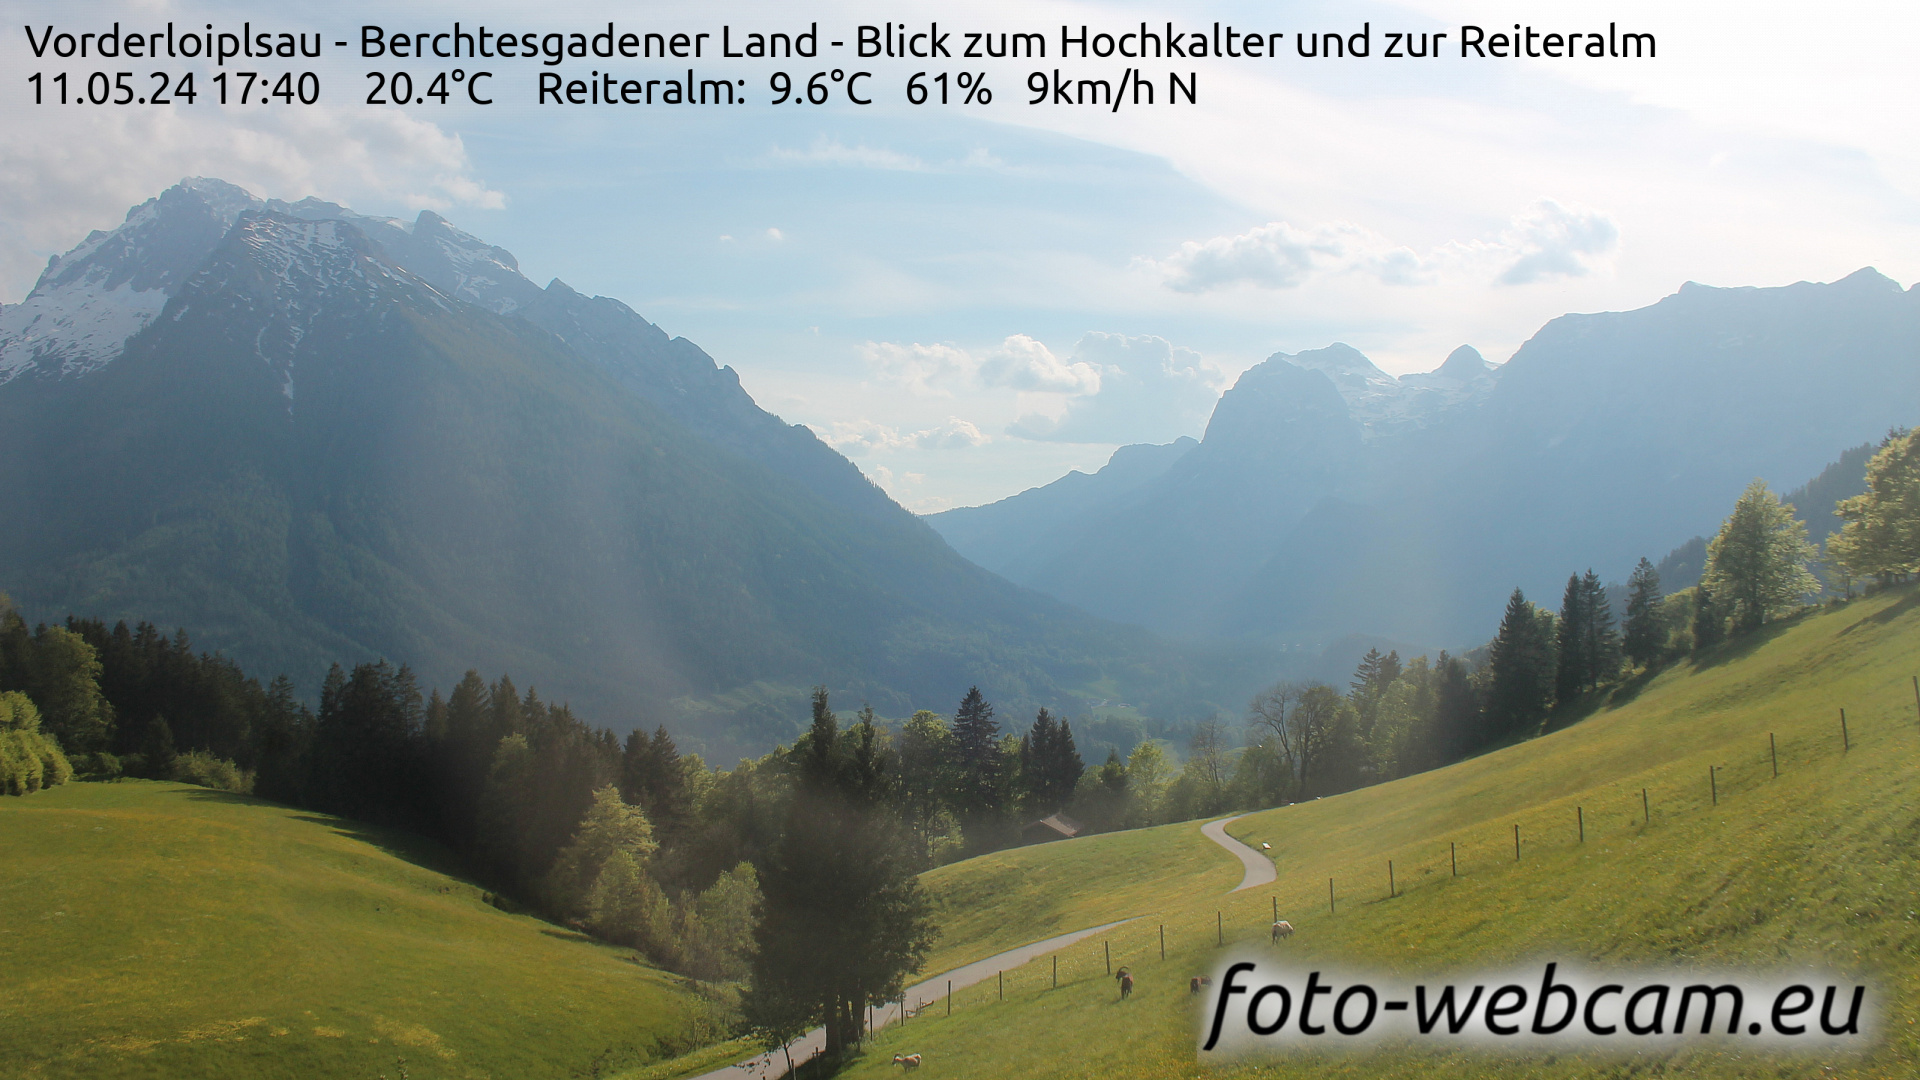 Ramsau bei Berchtesgaden Ons. 17:48